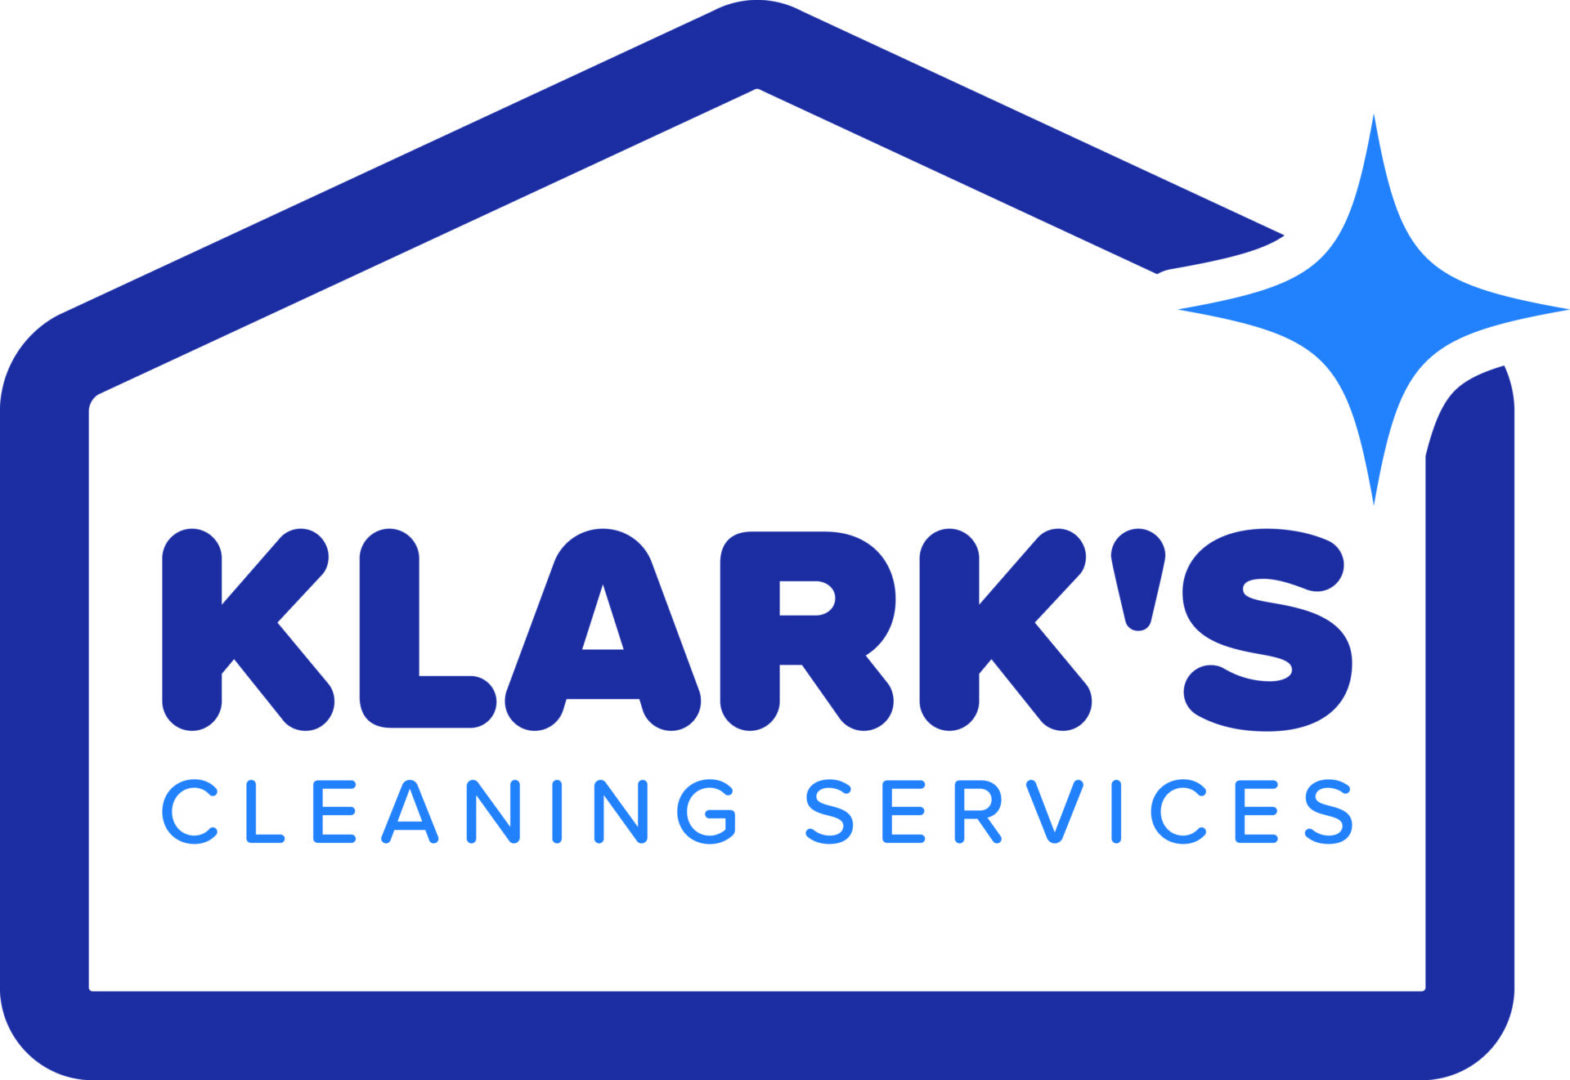 CX-91261_Klark's Cleaning Services_FINAL